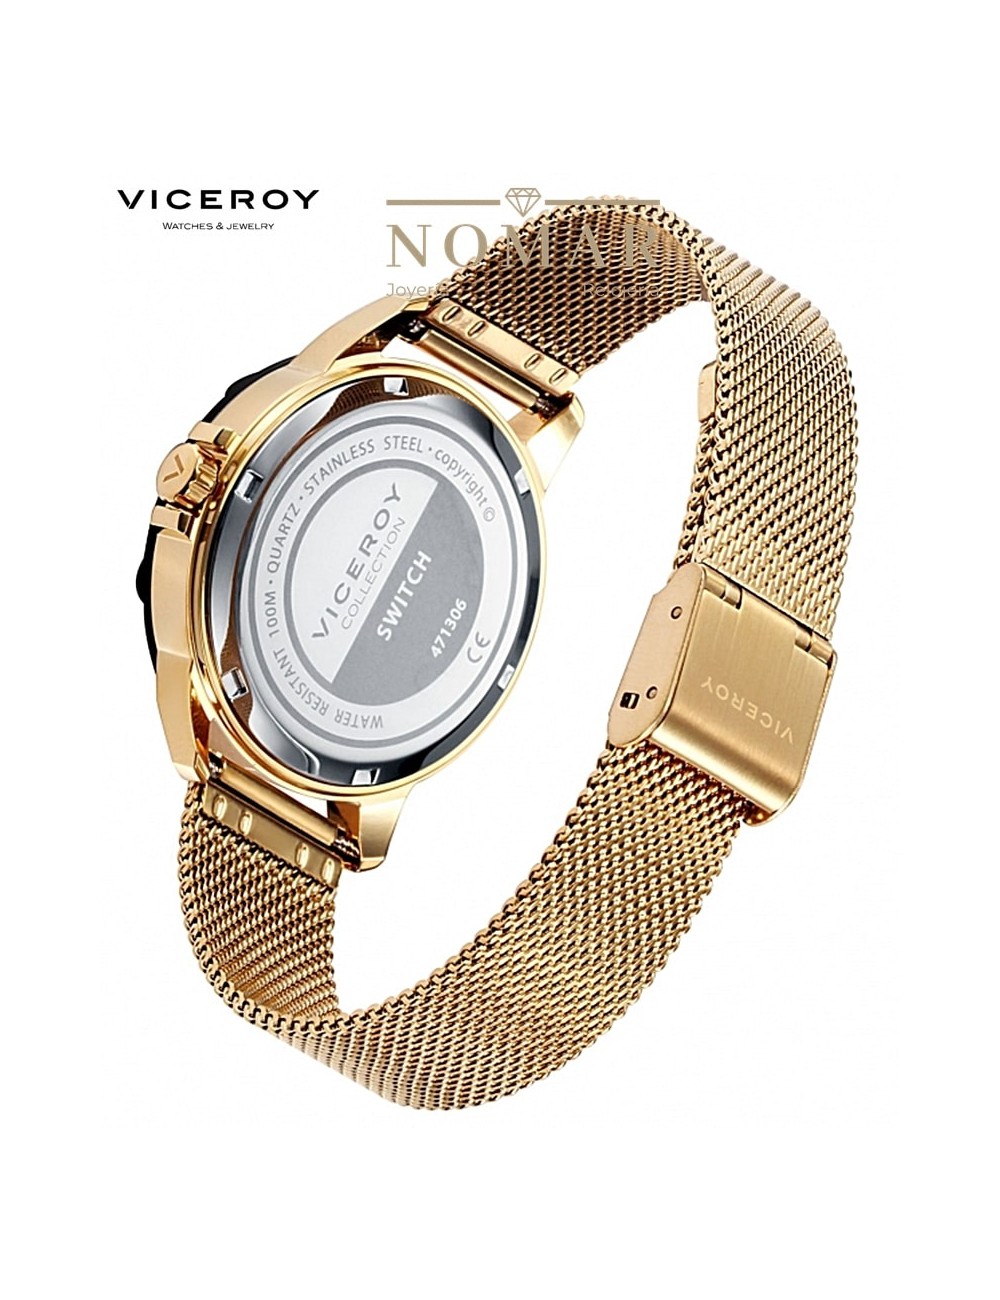 Reloj Viceroy de Mujer Kiss, dos agujas, caja y malla en Ip dorado